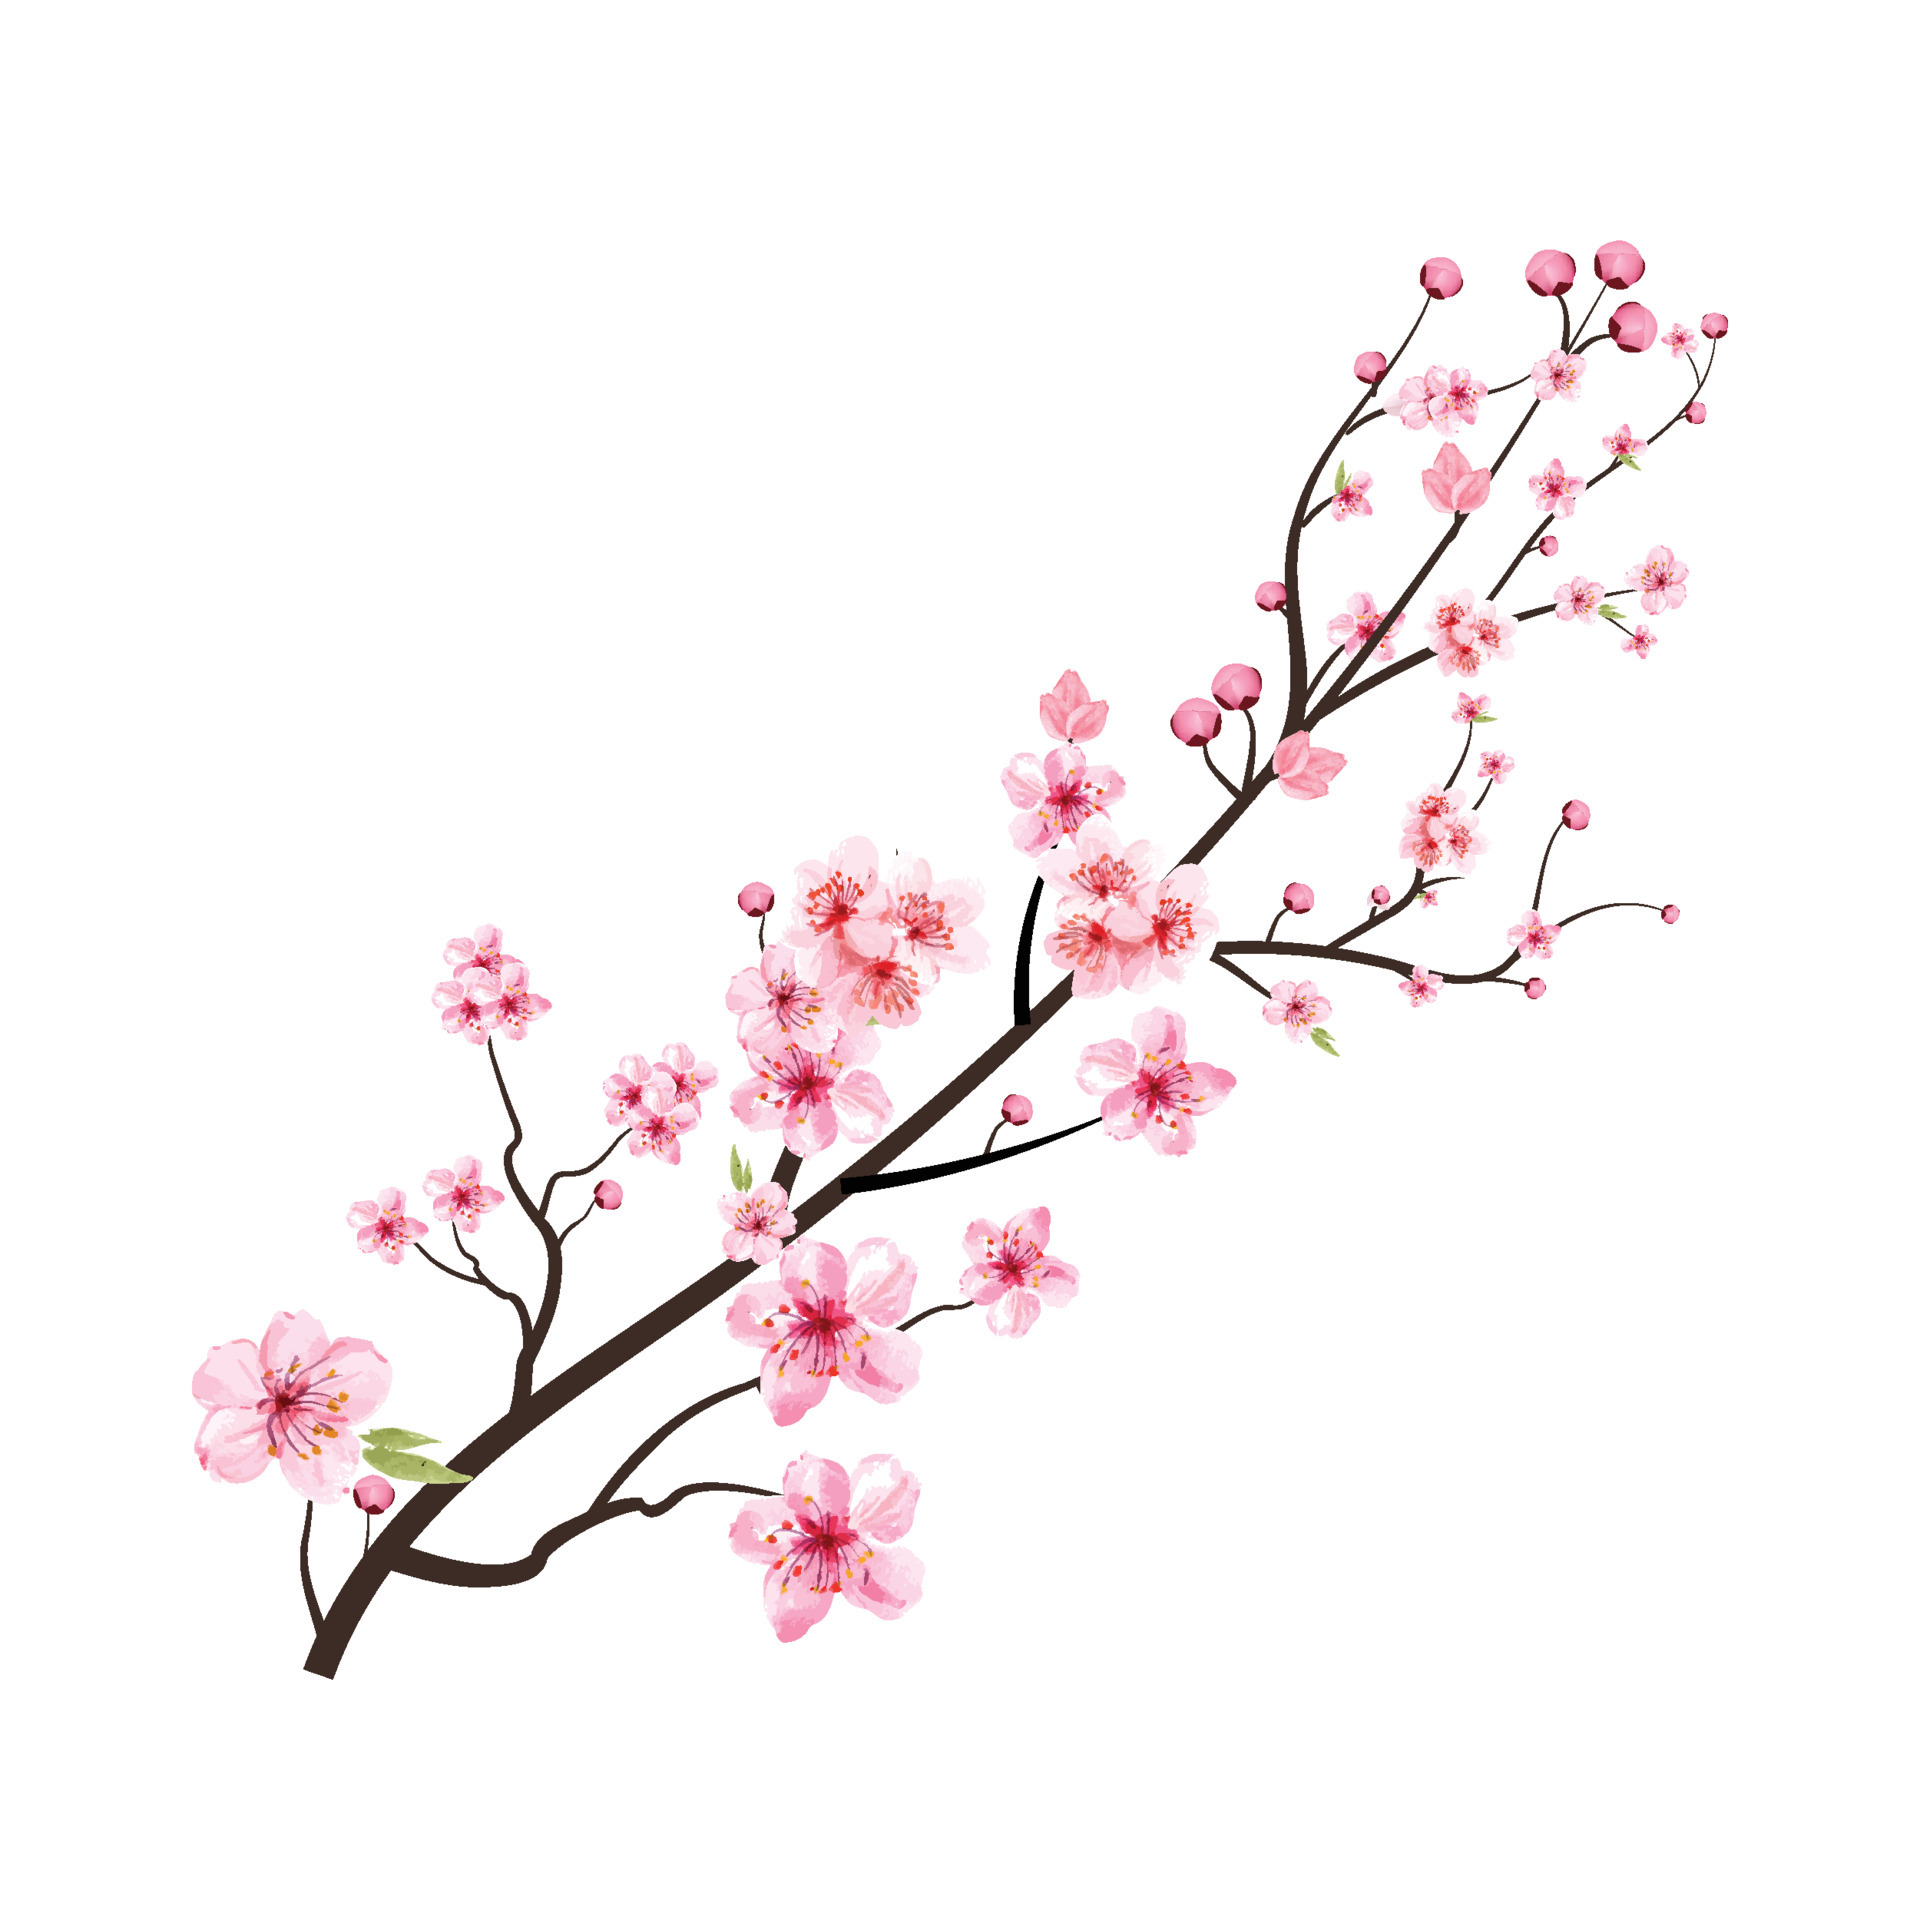 fiore di ciliegio con fiore di sakura acquerello che sboccia. vettore  realistico del fiore della ciliegia dell'acquerello. ramo di sakura. ramo di  fiori di ciliegio con vettore di fiori di sakura rosa.